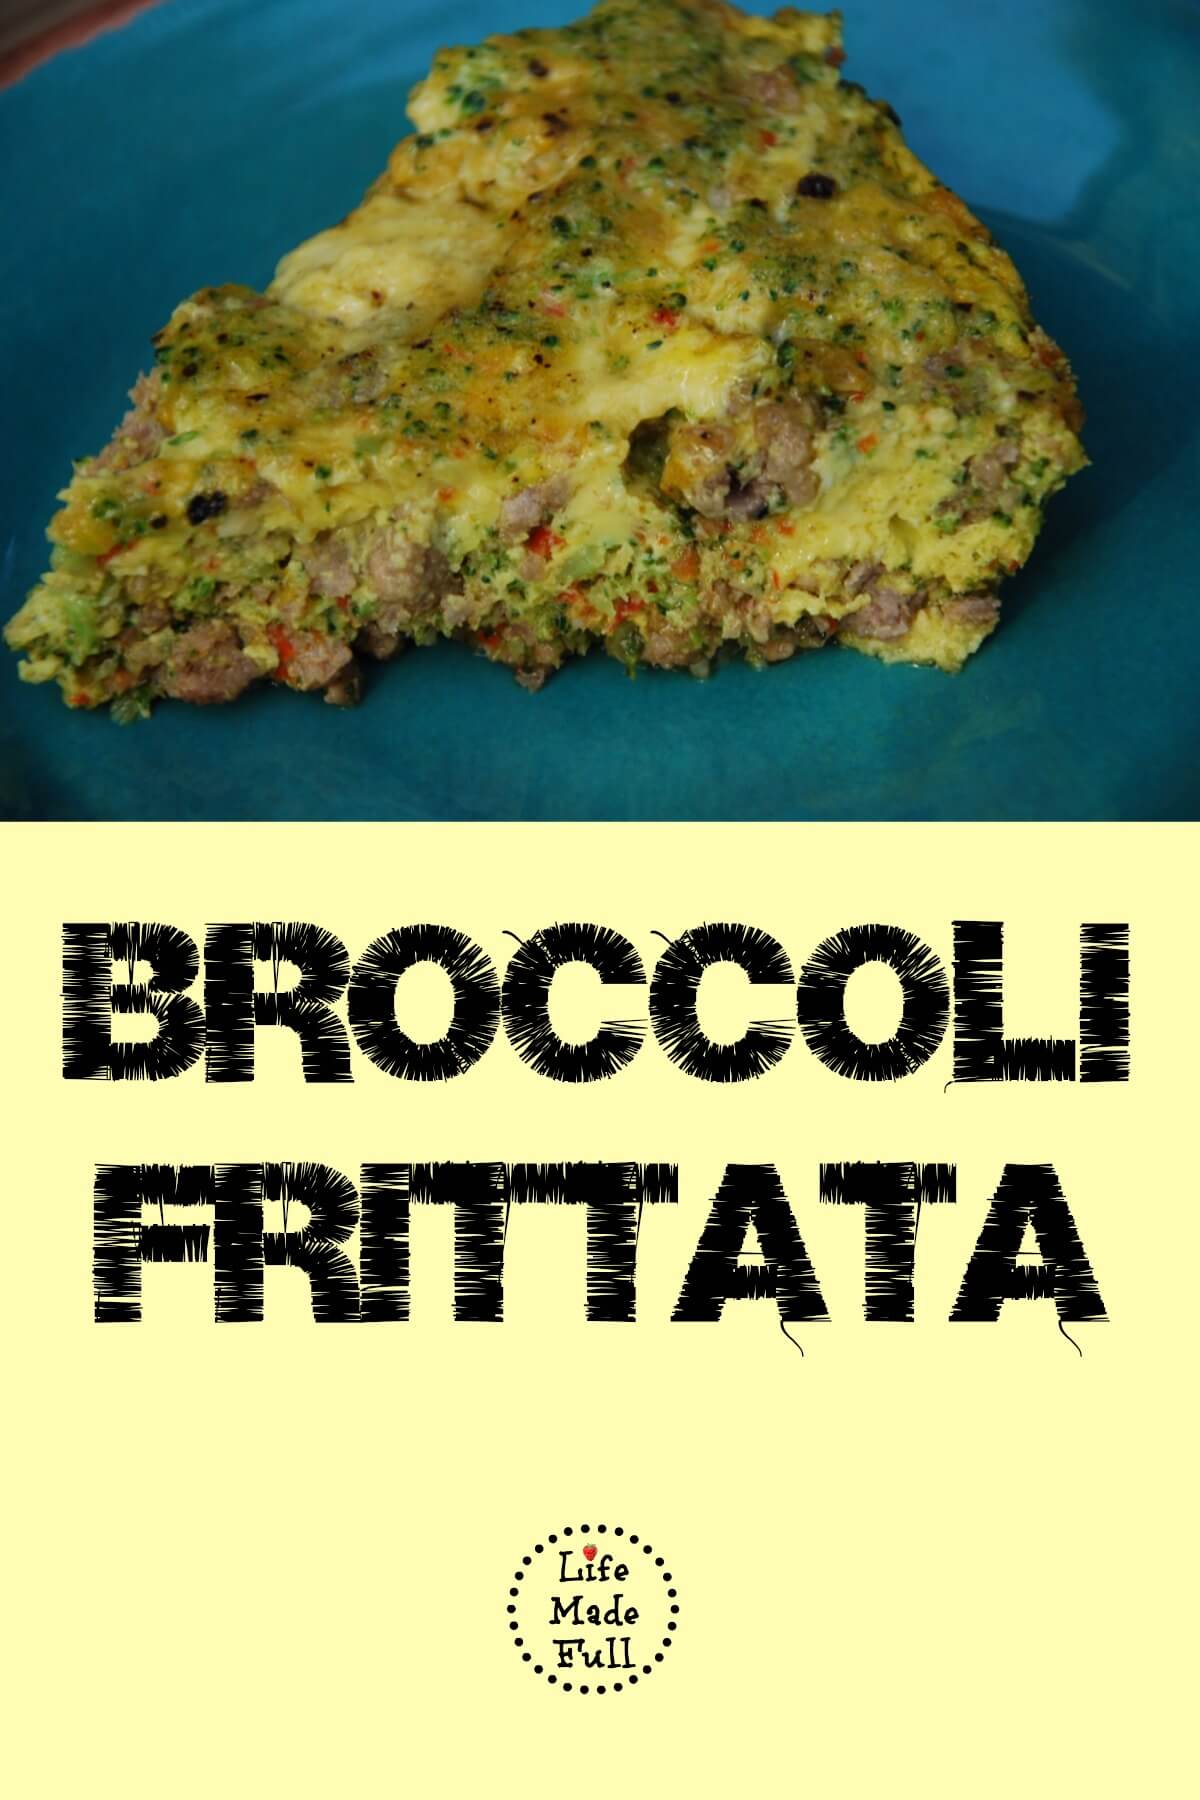 Broccoli Frittata